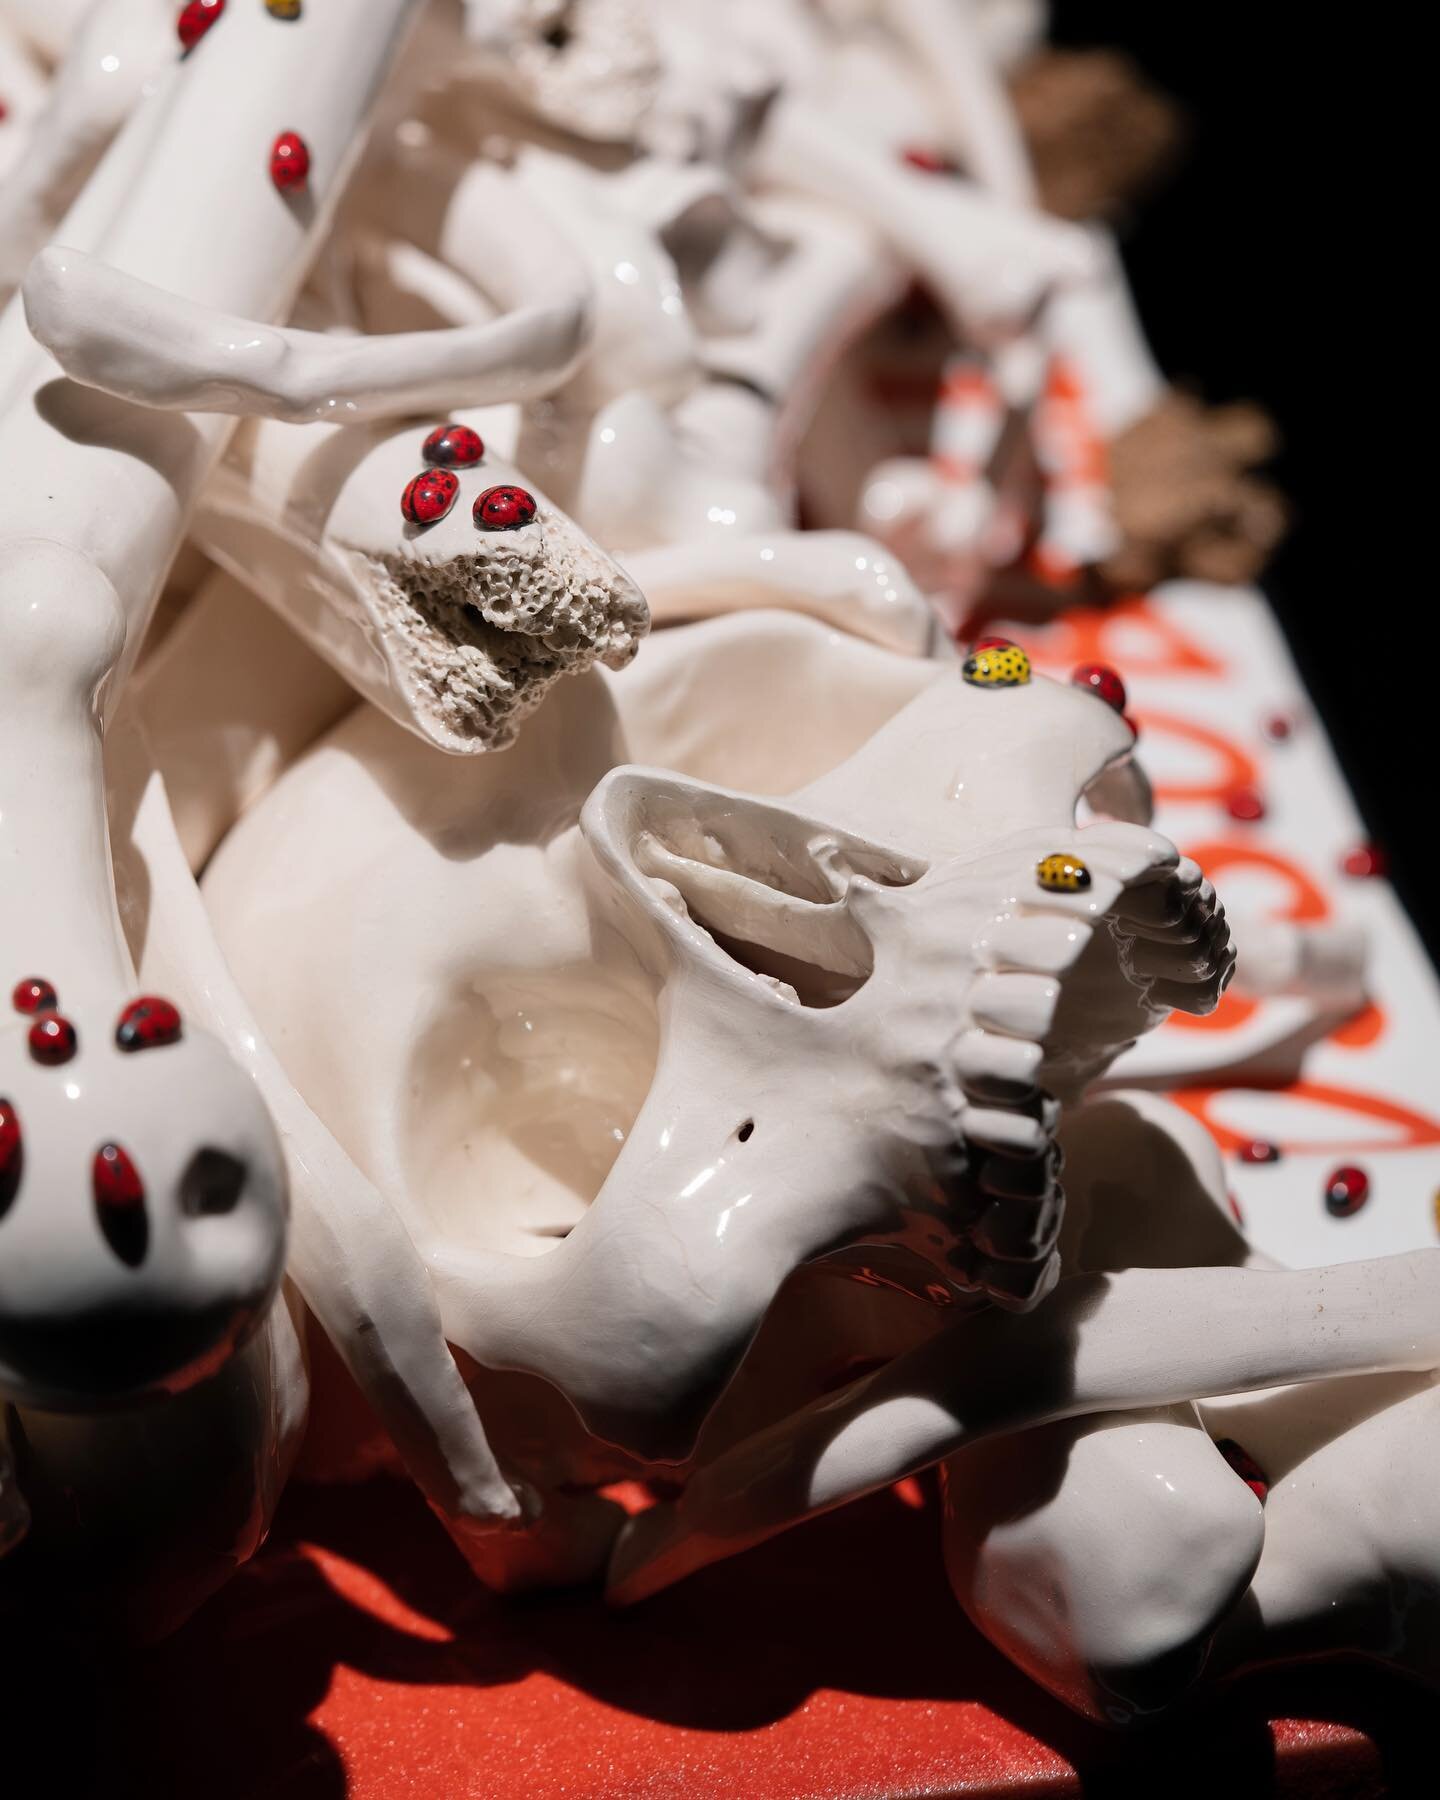 &ldquo;OSSOBELLO&rdquo;, ceramica policroma, 2001 Bertozzi&amp;Casoni #carlocinquegallery #bertozziecasoni #mirabilitracce 
.
.
.
.
#carlocinque #gallery #contemporaryart #art #galleria #skeleton #artgallery #galleriadarte #brera #milano #ossa #skull